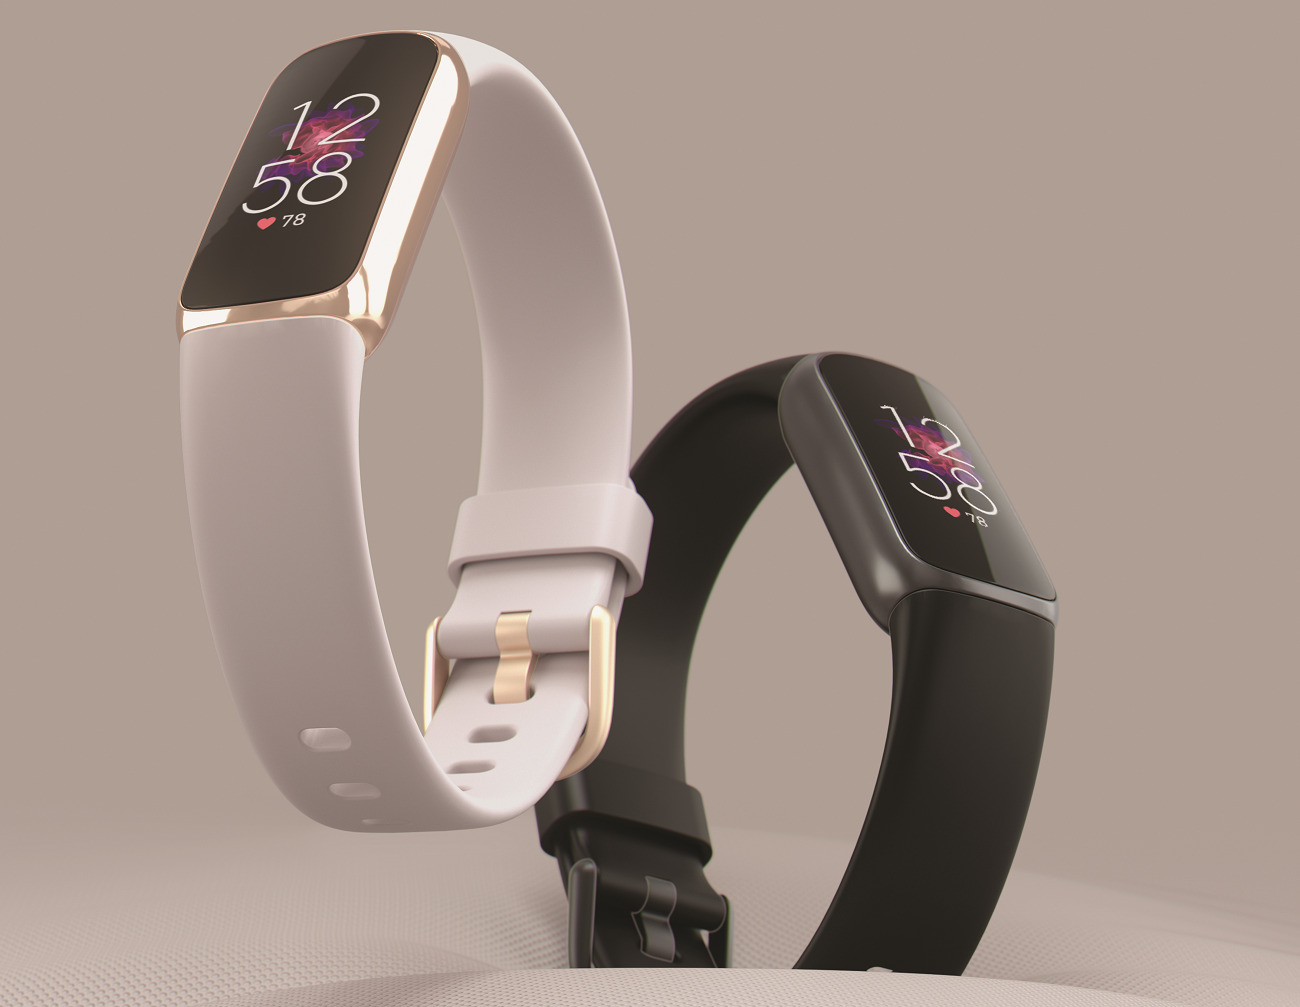 Bracelets de montre Fitbit